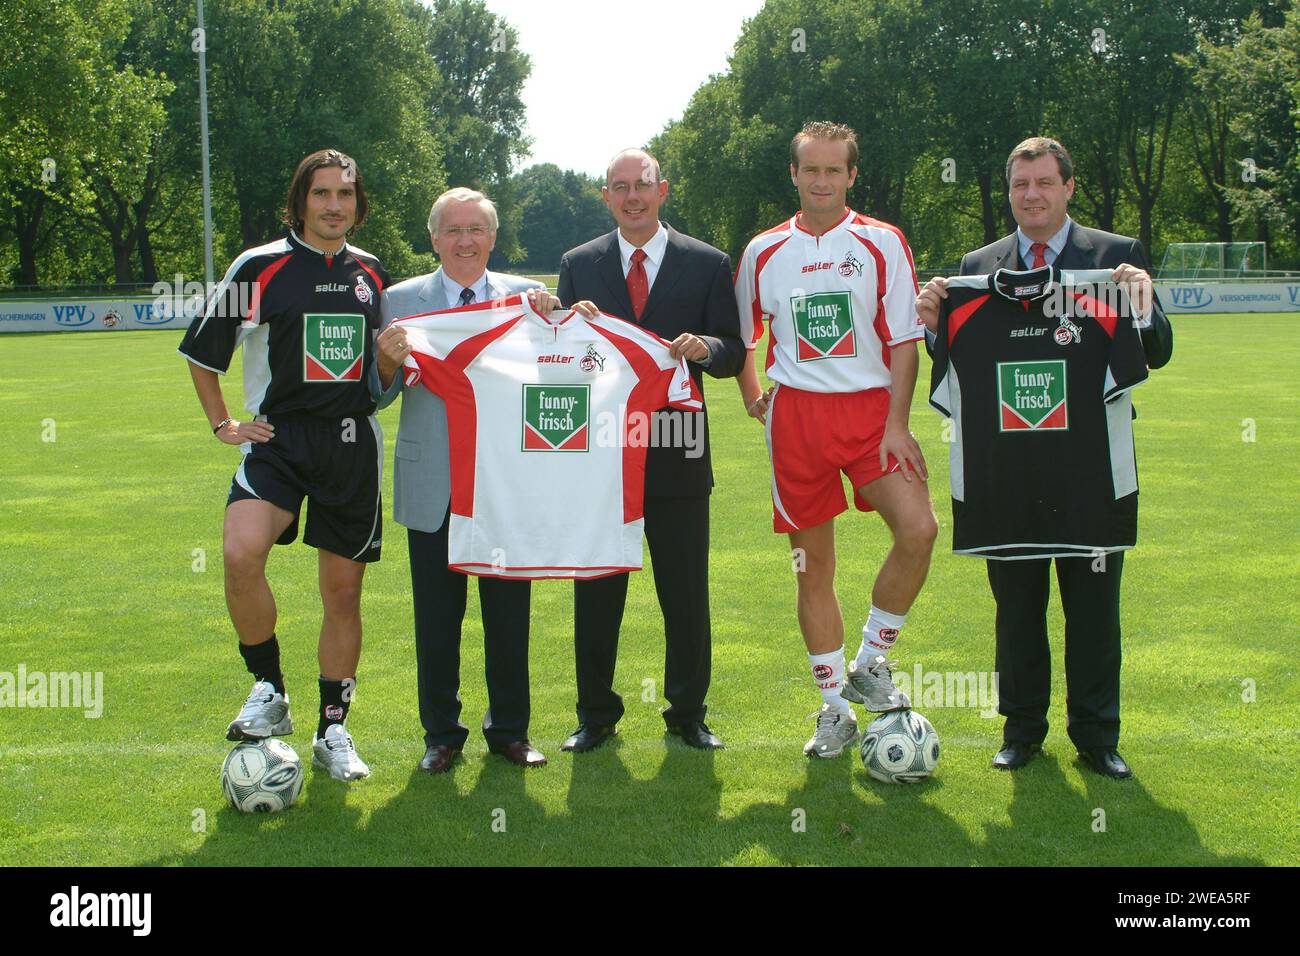 Pressetermin mit Sponsor lustig-frisch beim 1. FC Köln Fussballclub mit Fussballer Dirk Lottner und Mustafa Dogan, Deutschland 2003. Stockfoto